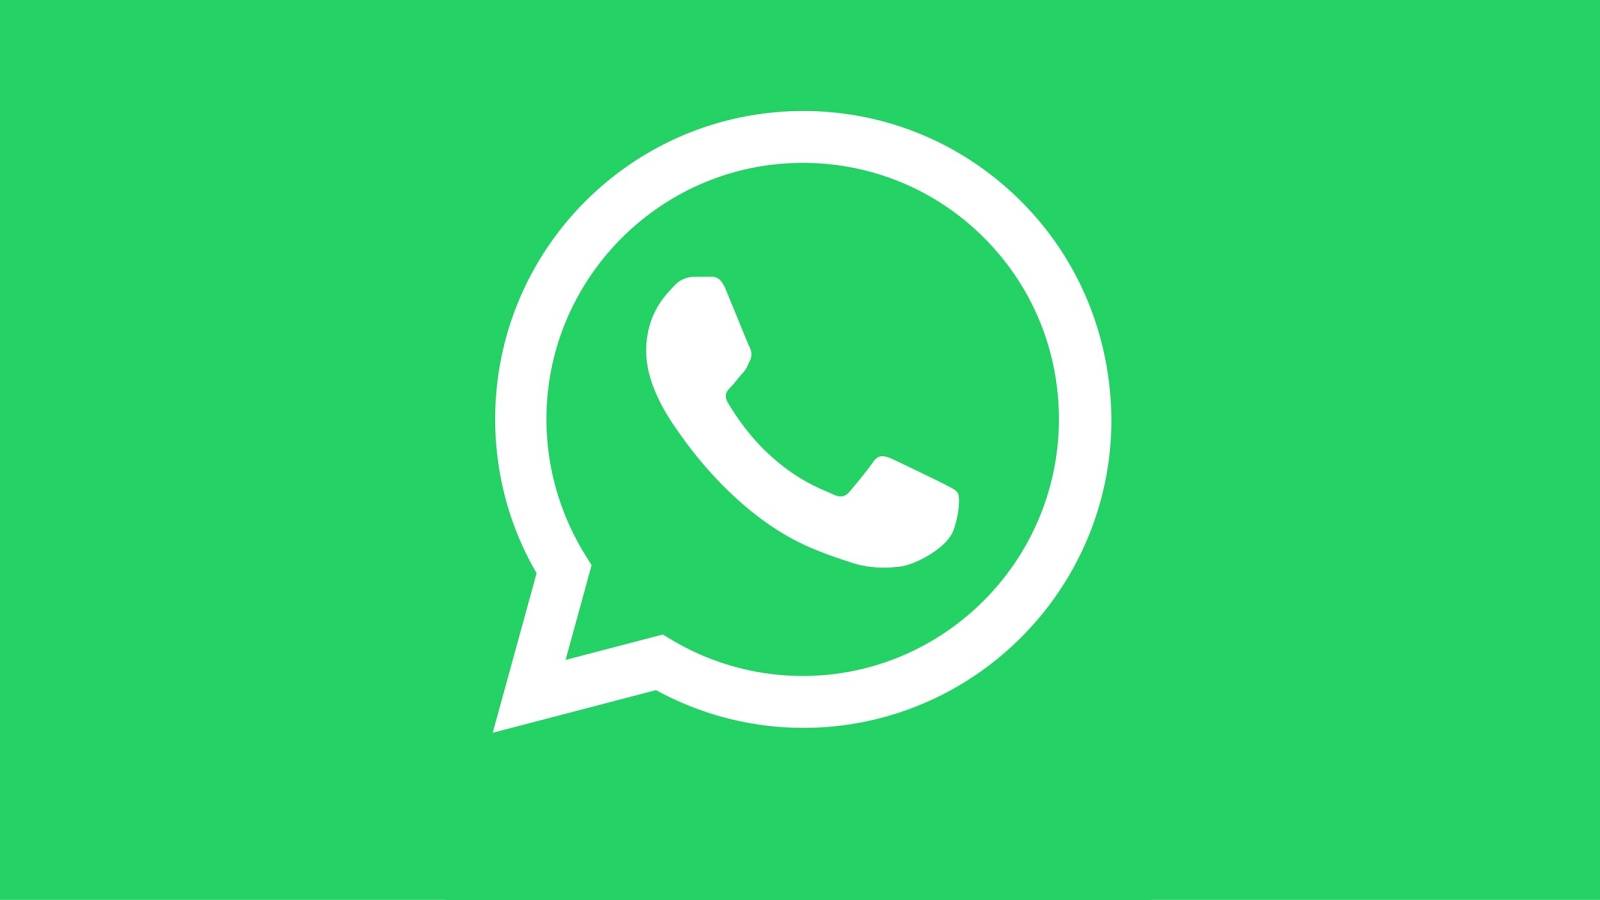 WhatsApp 3 MODIFICARI IMPORTANTE Disponibile iPhone Android